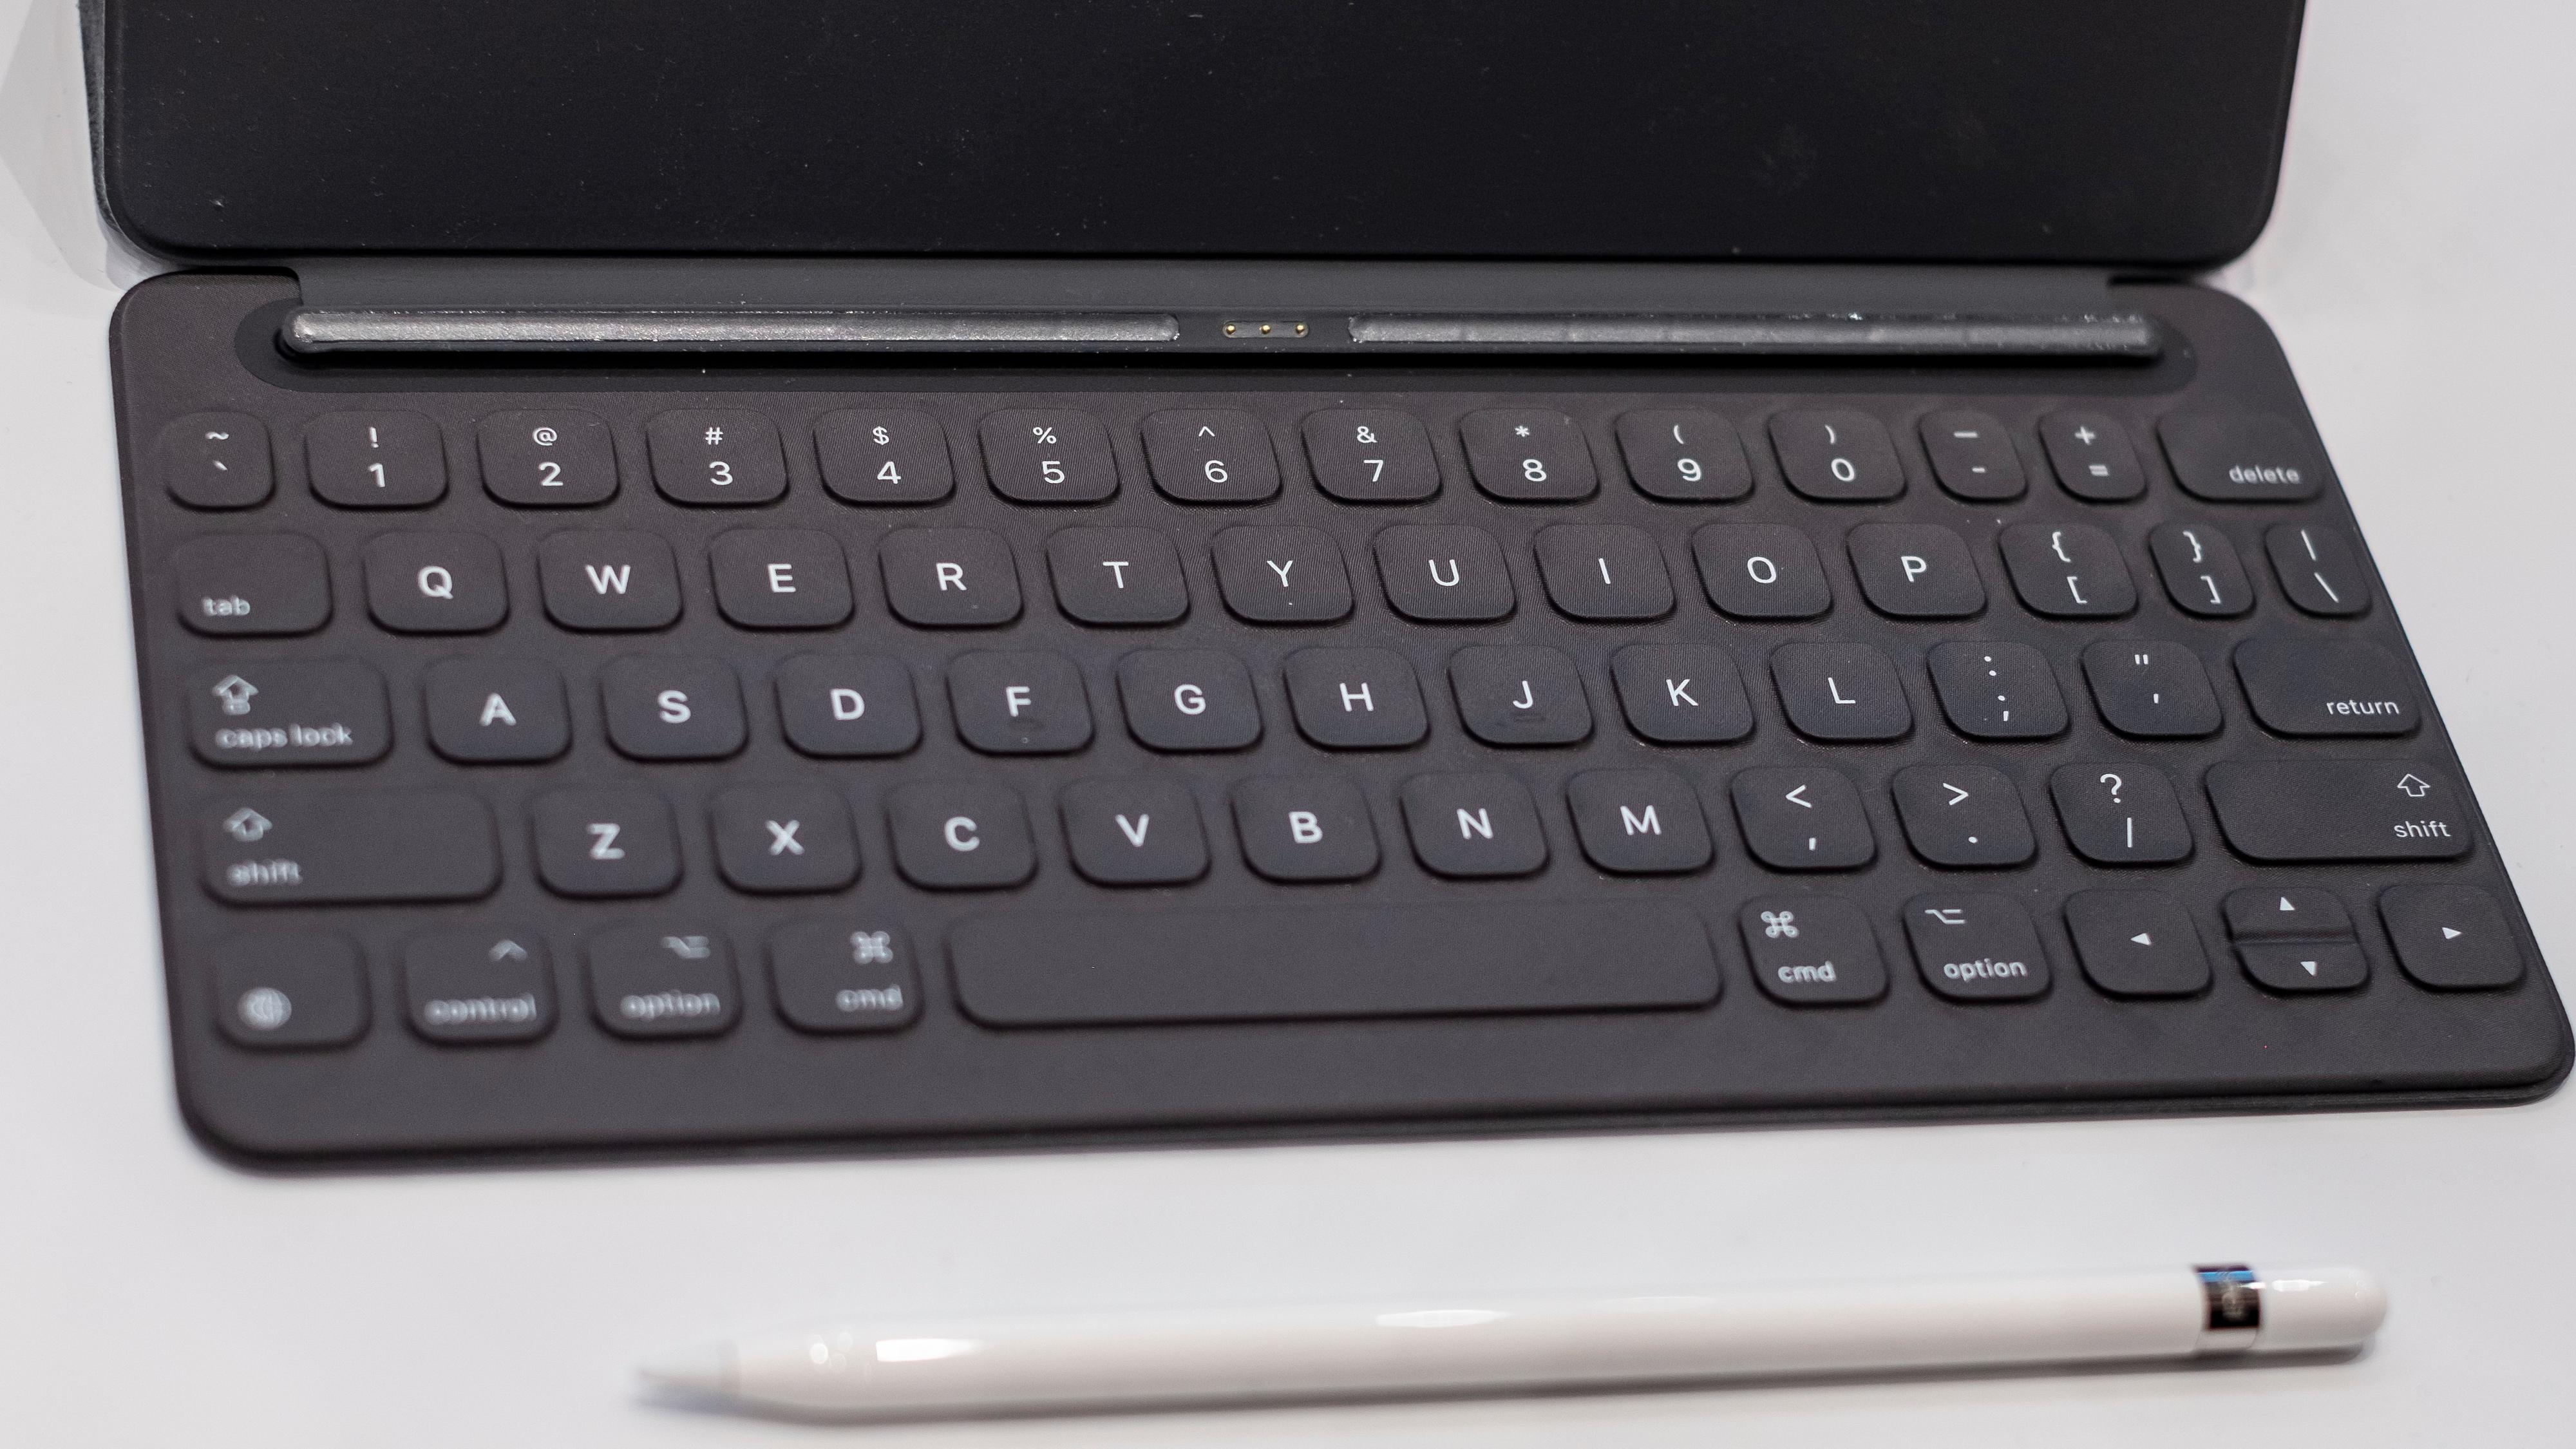 Tastatur og Pencil av samme sort som iPad Air støtter kan brukes med iPad 2019. Siden det er fysisk tilkobling på brettet slipper du å bruke Bluetooth-taster. Samtidig – Apples tastaturdeksel er svinedyre med en pris på rundt 17 hundrelapper.